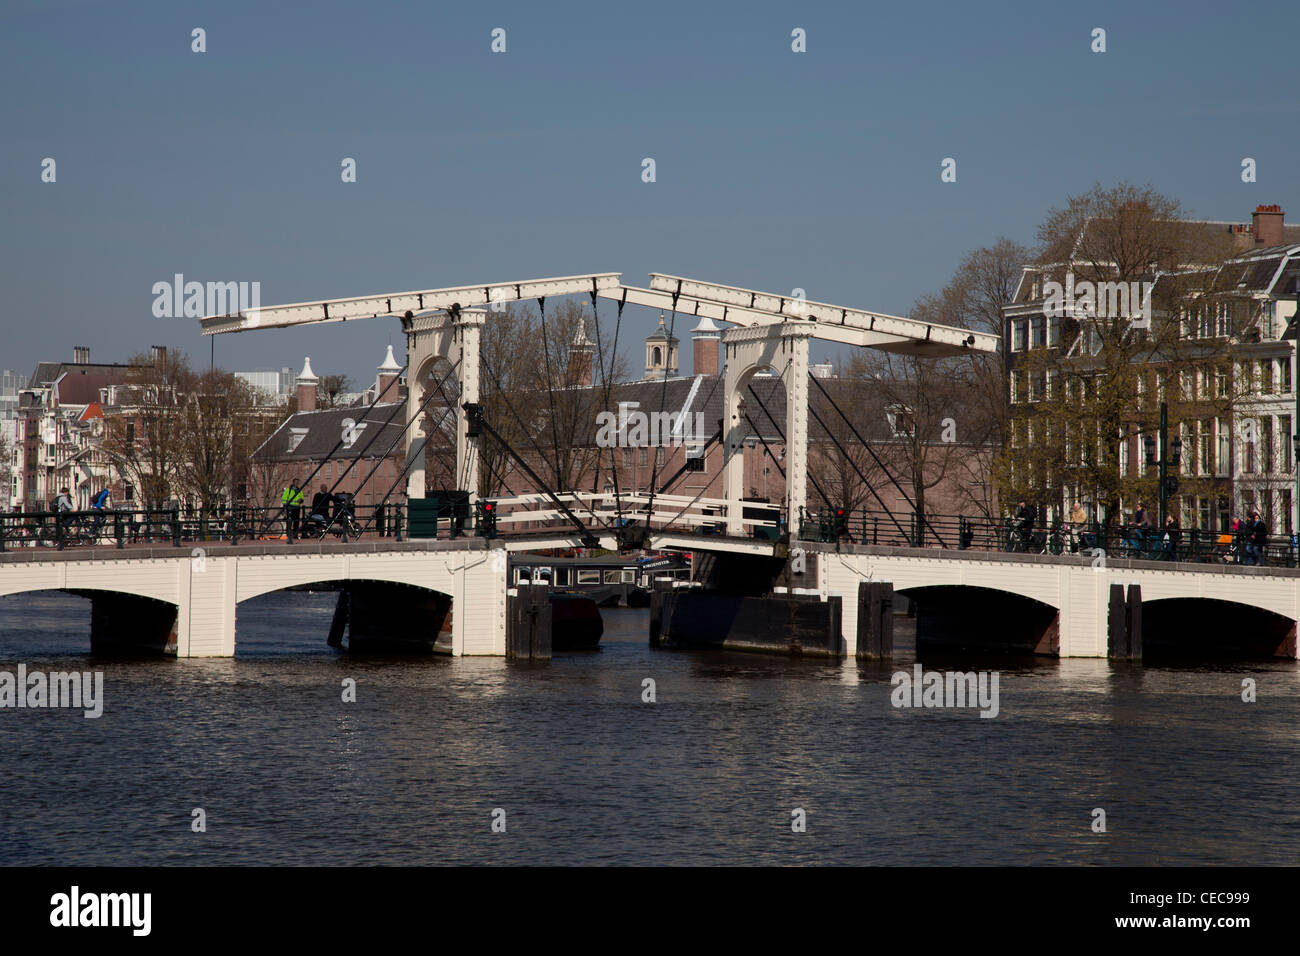 Magere Brug Bridge over the Amstel River, Amsterdam, Niederlande Stock Photo